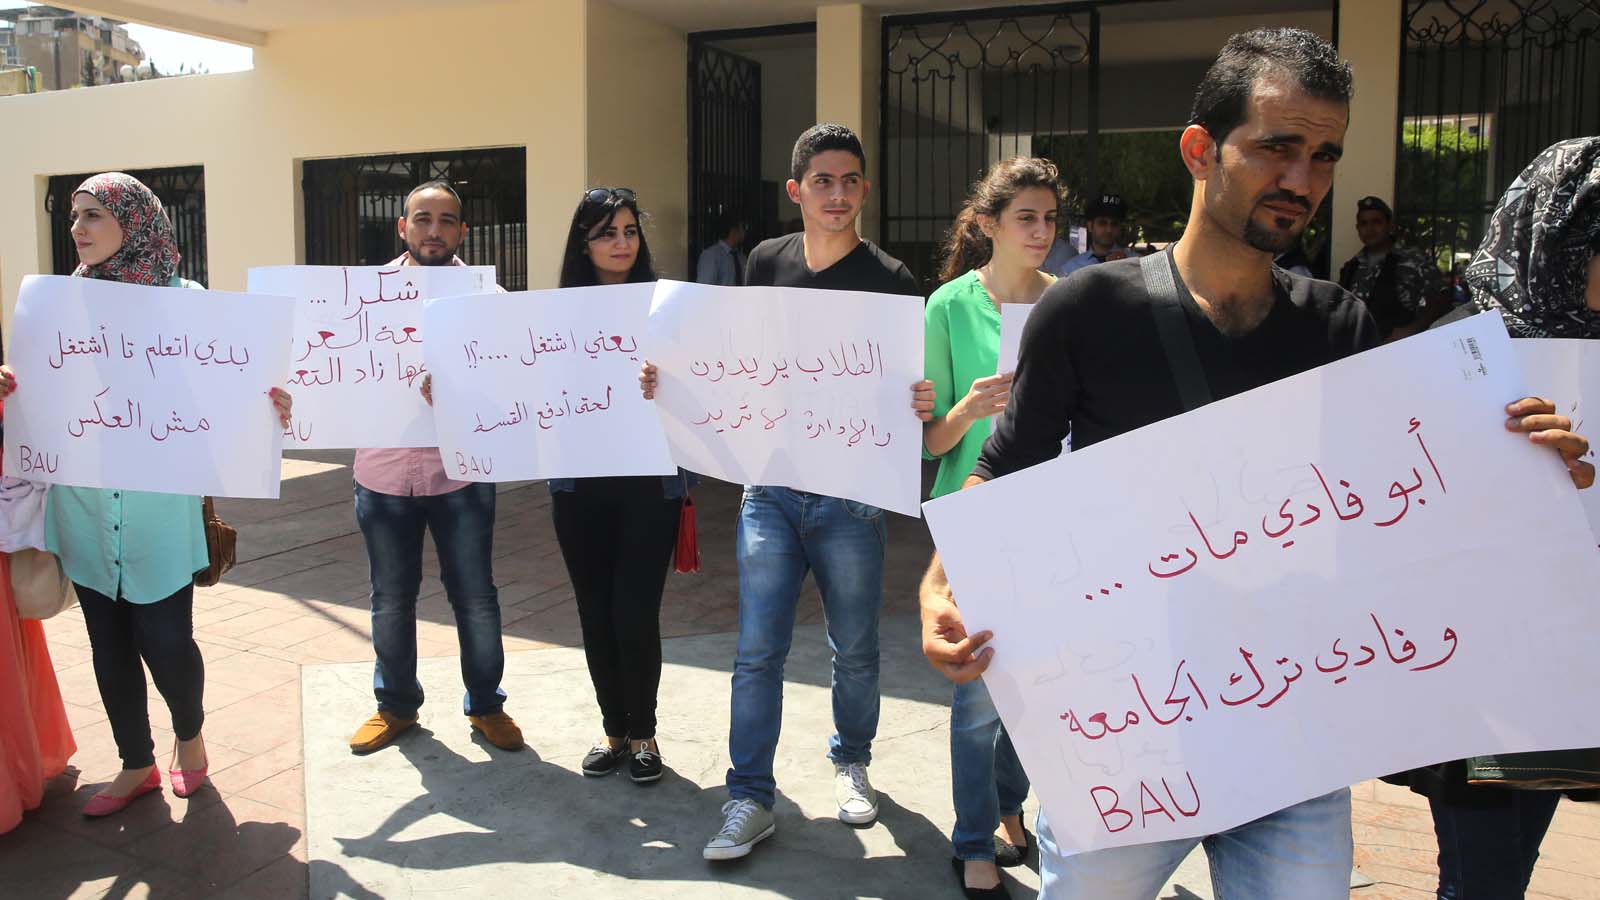 "بيروت العربية": خوف الطلاب من الفصل يبقي تحركهم افتراضيا